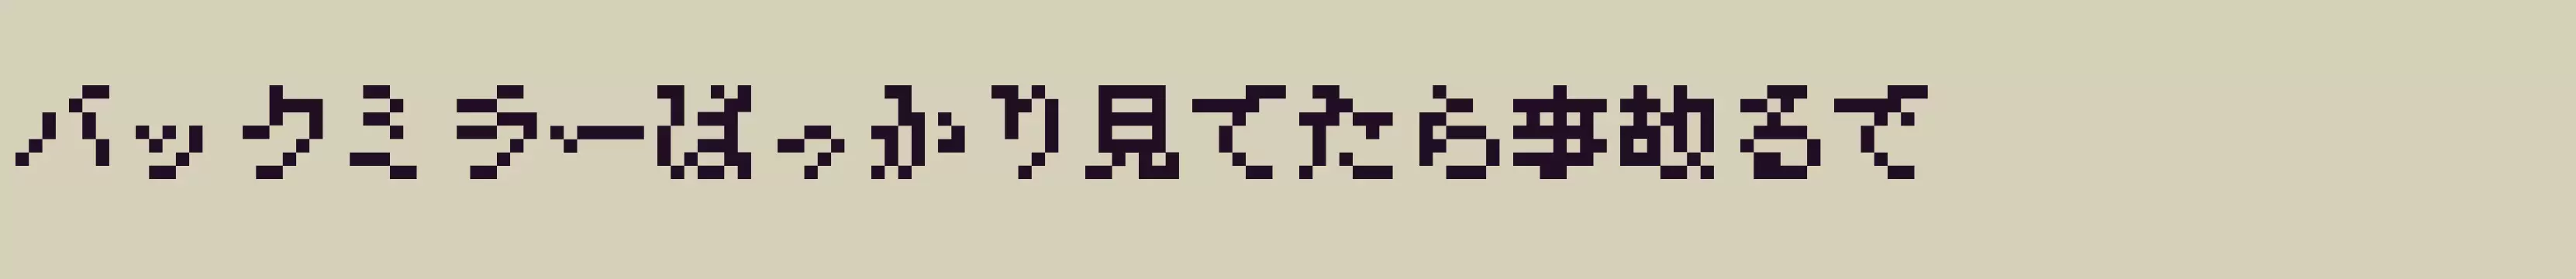 「misaki_mincho」字体效果图